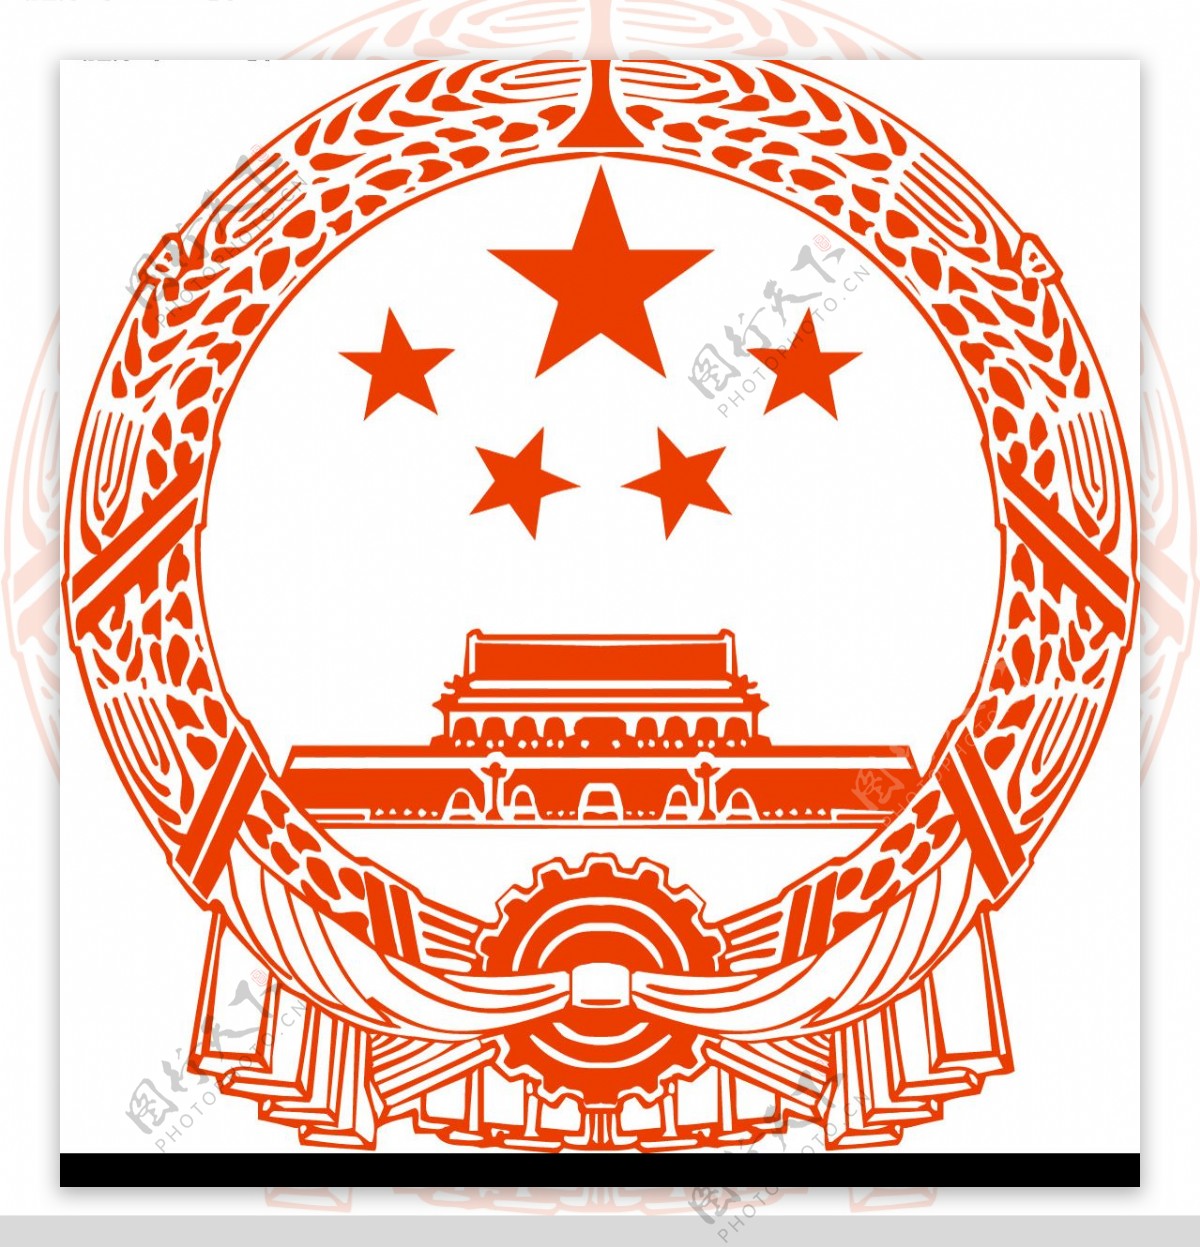 中华人民共和国国徽图片